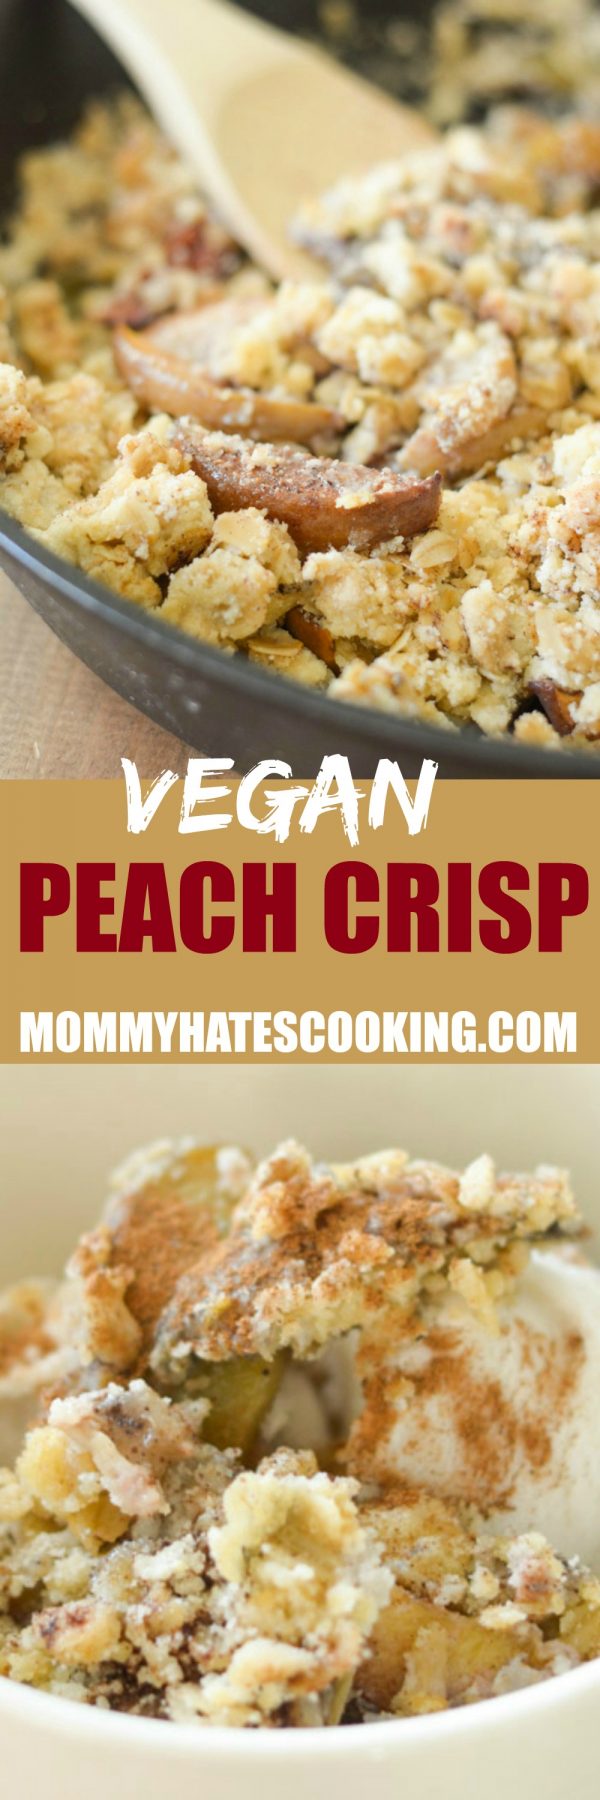 Easy Vegan Peach Crisp